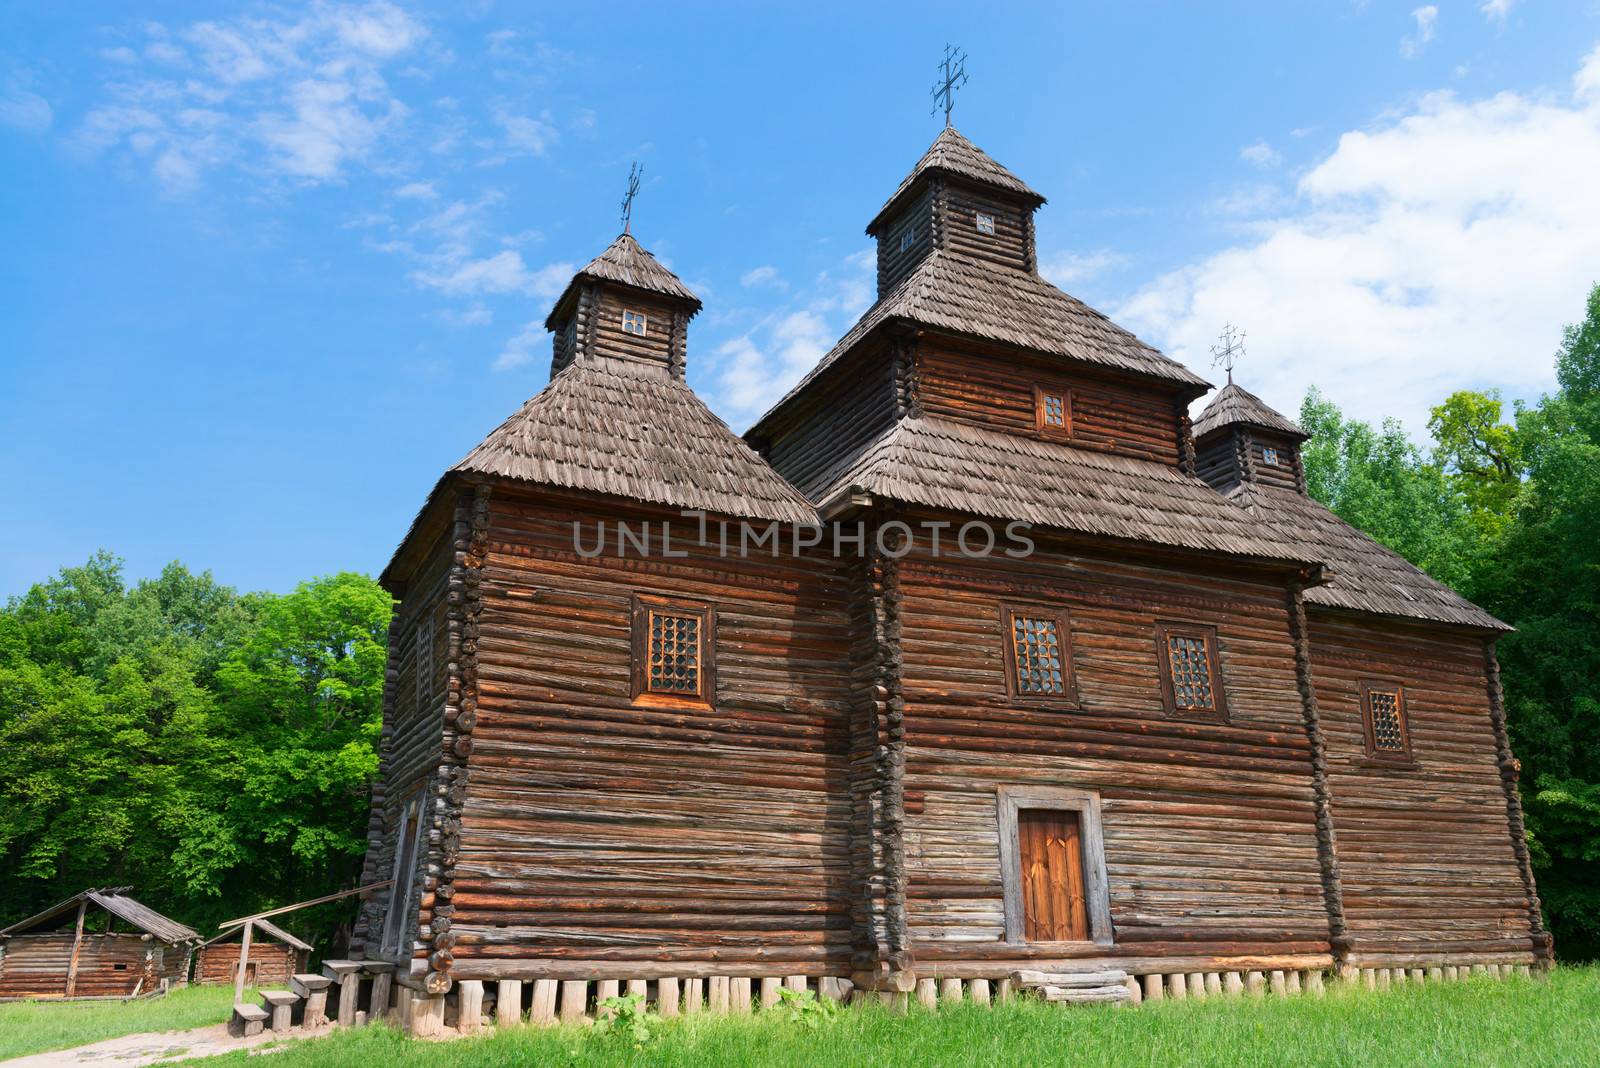 Antique wooden church by iryna_rasko